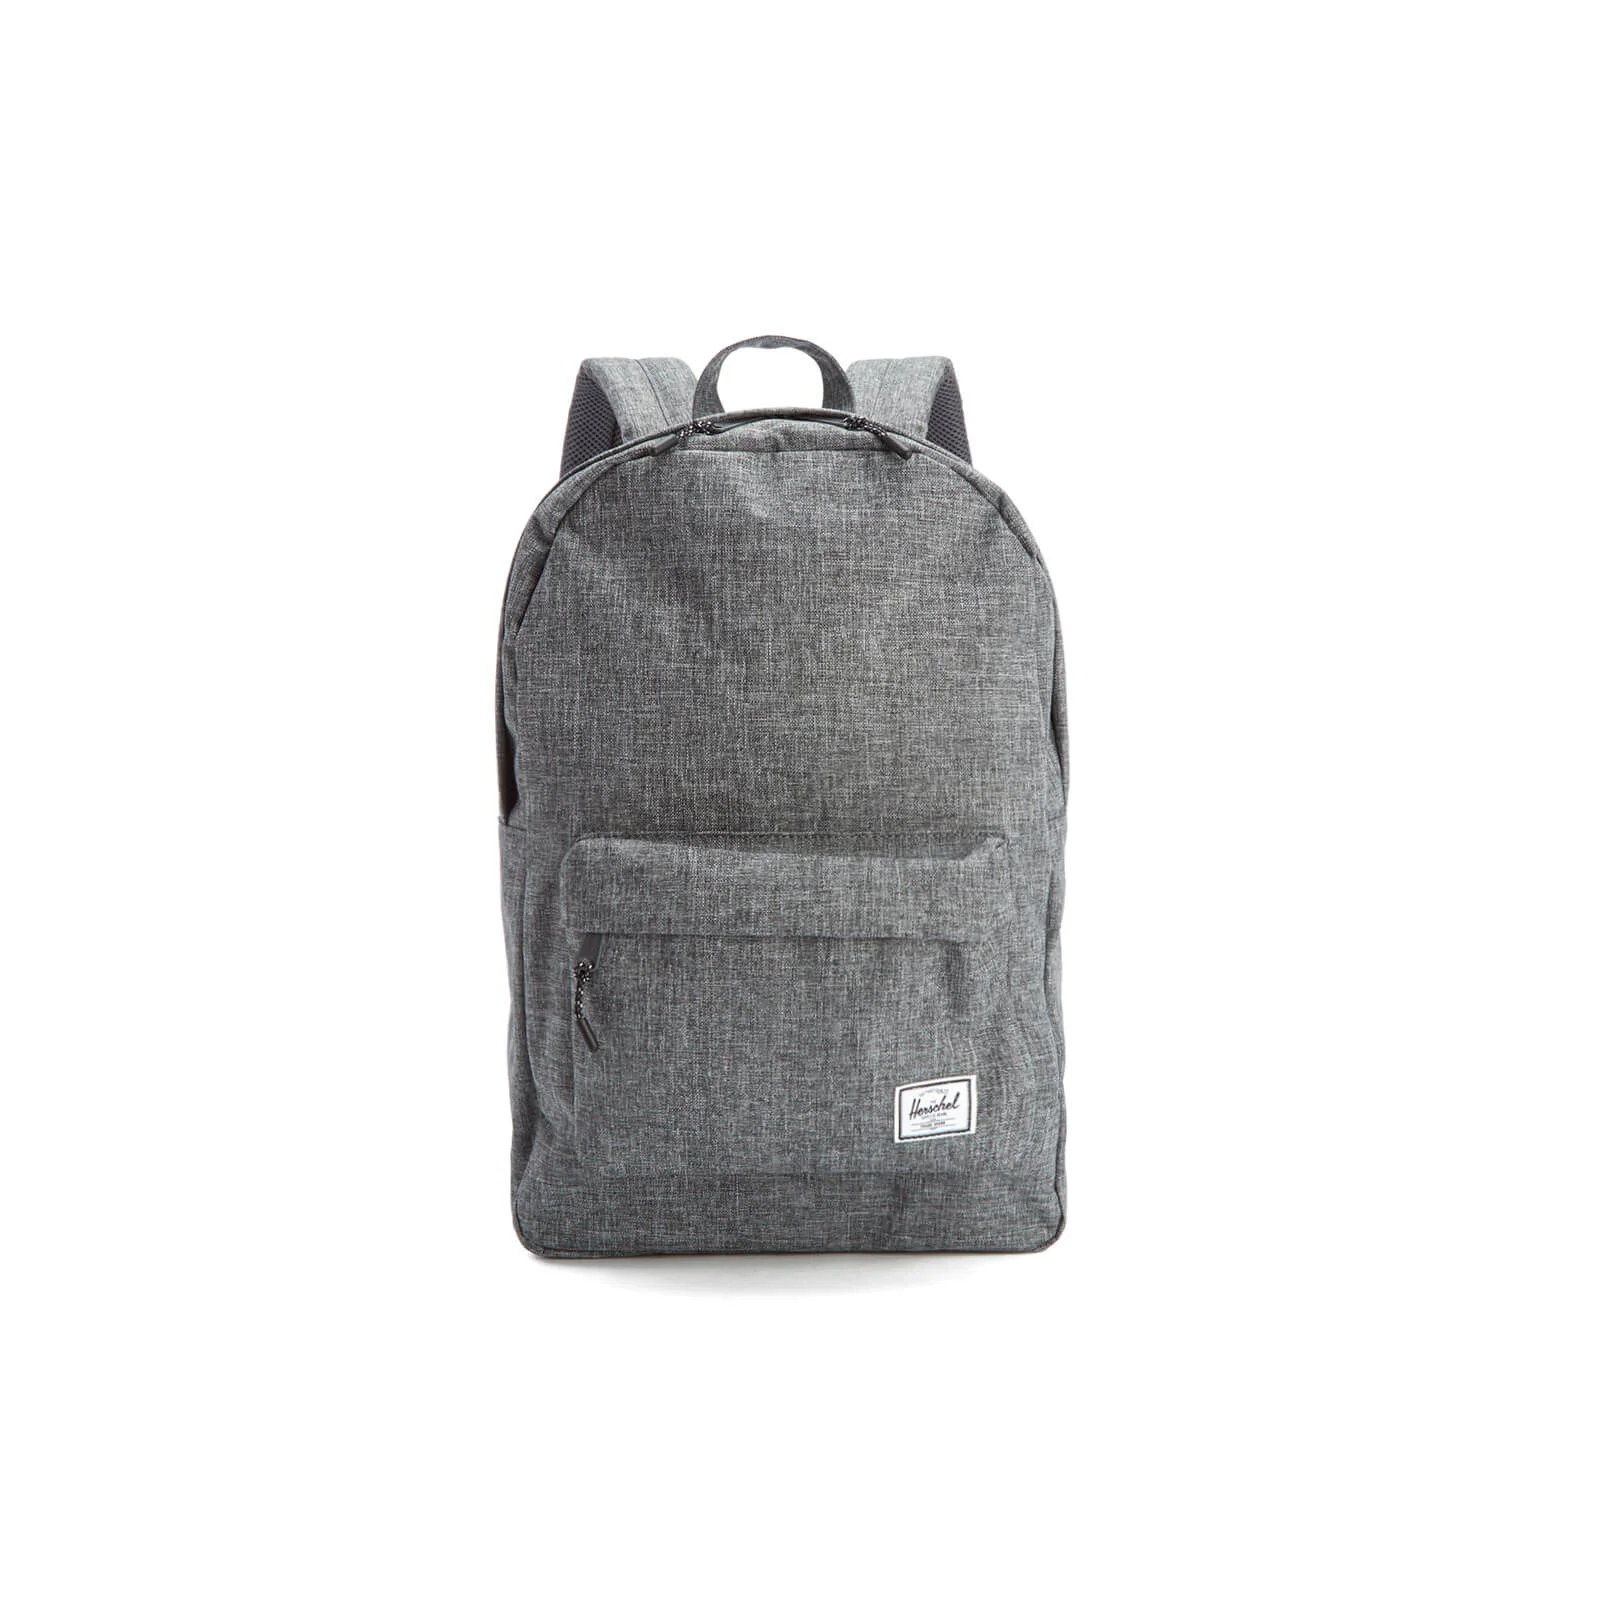 Herschel Supply Co. Classic Backpack - Raven/Crosshatch Image 1